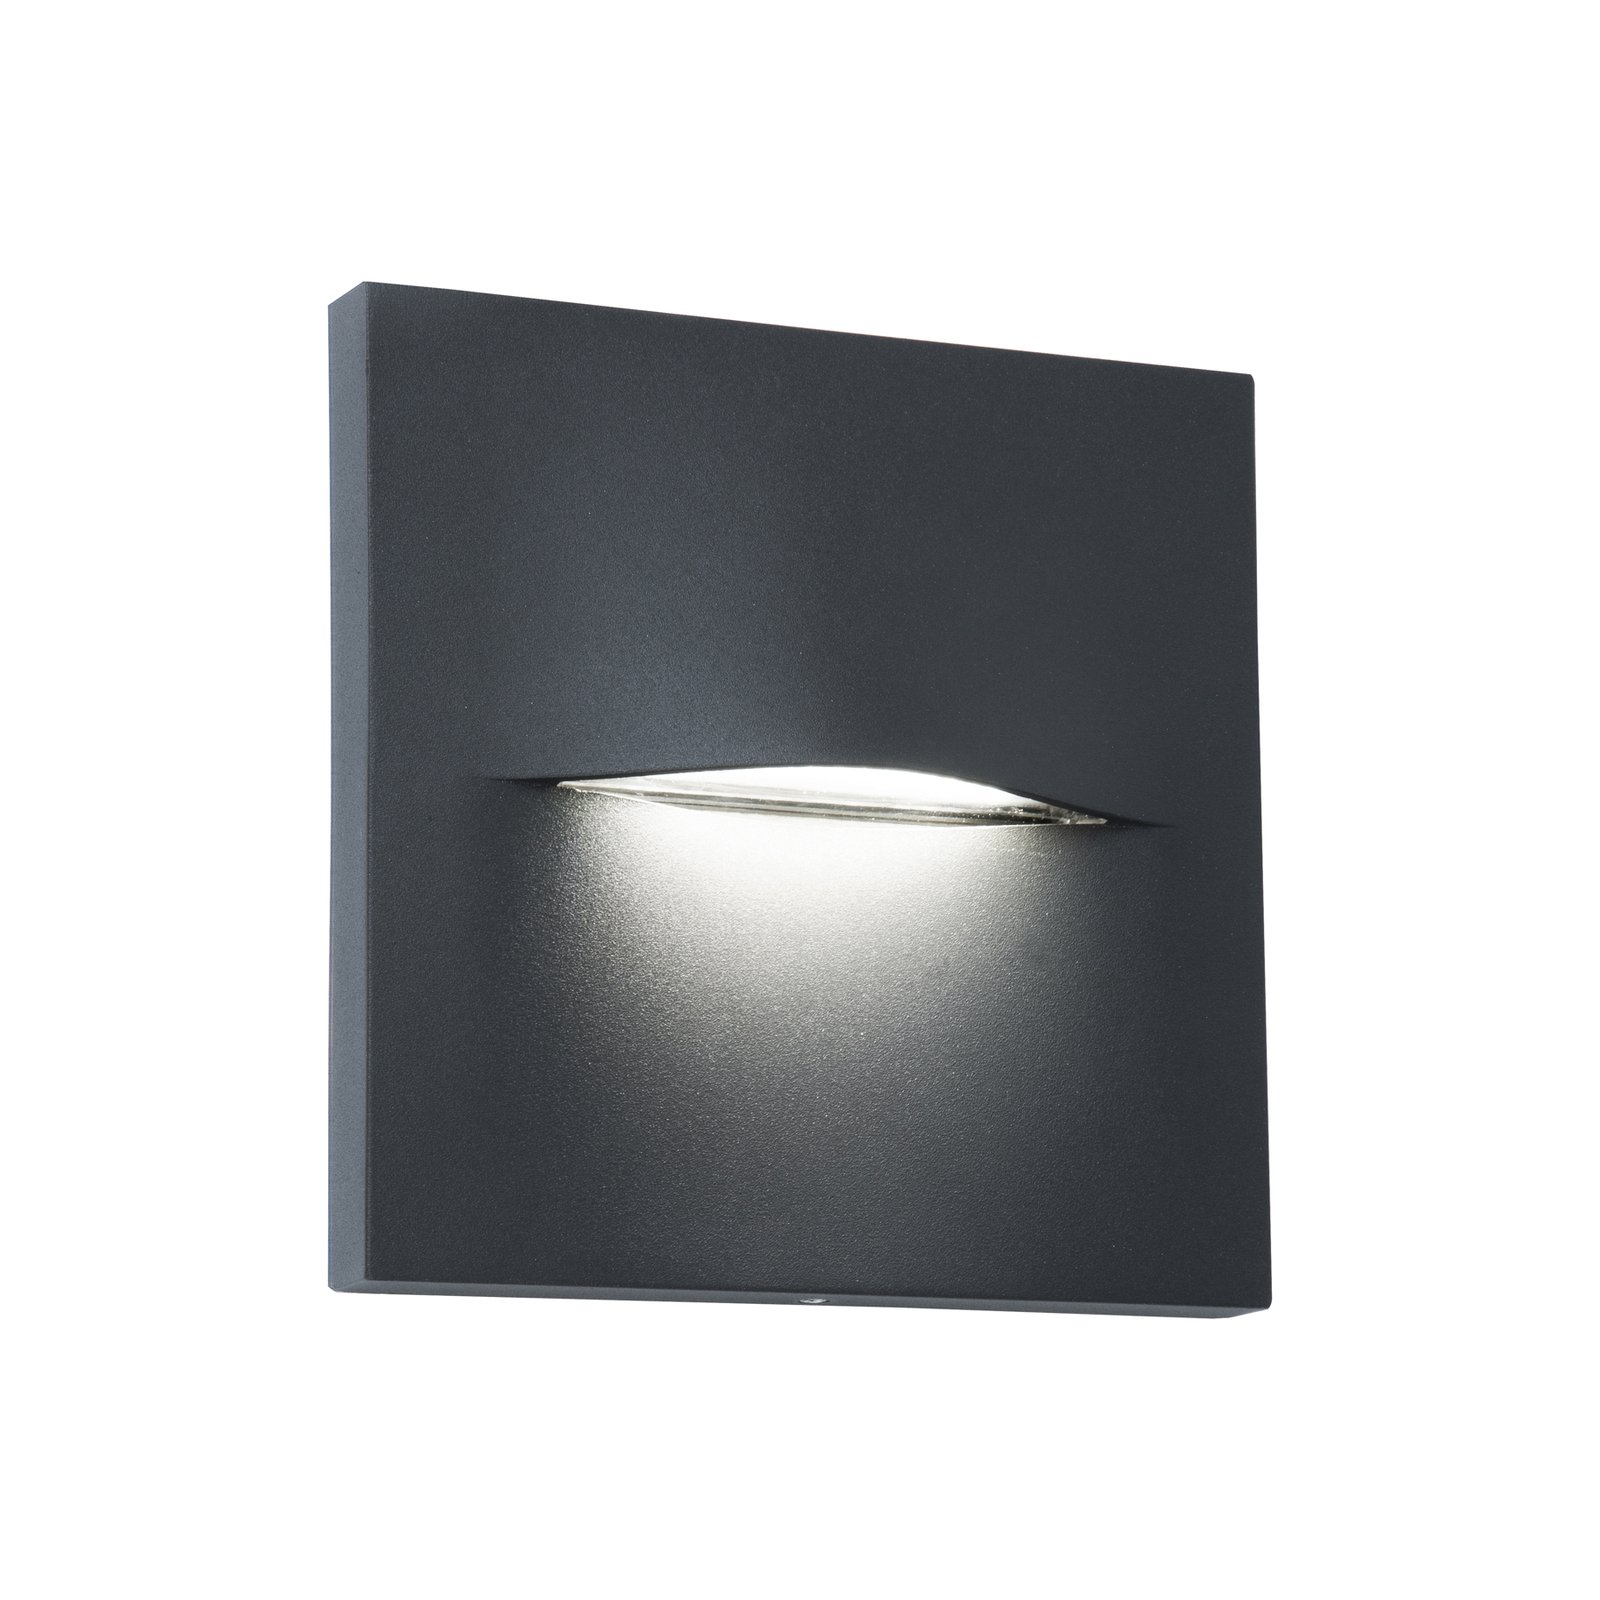 LED utendørs vegglampe Vita, mørkegrå, 14 x 14 cm